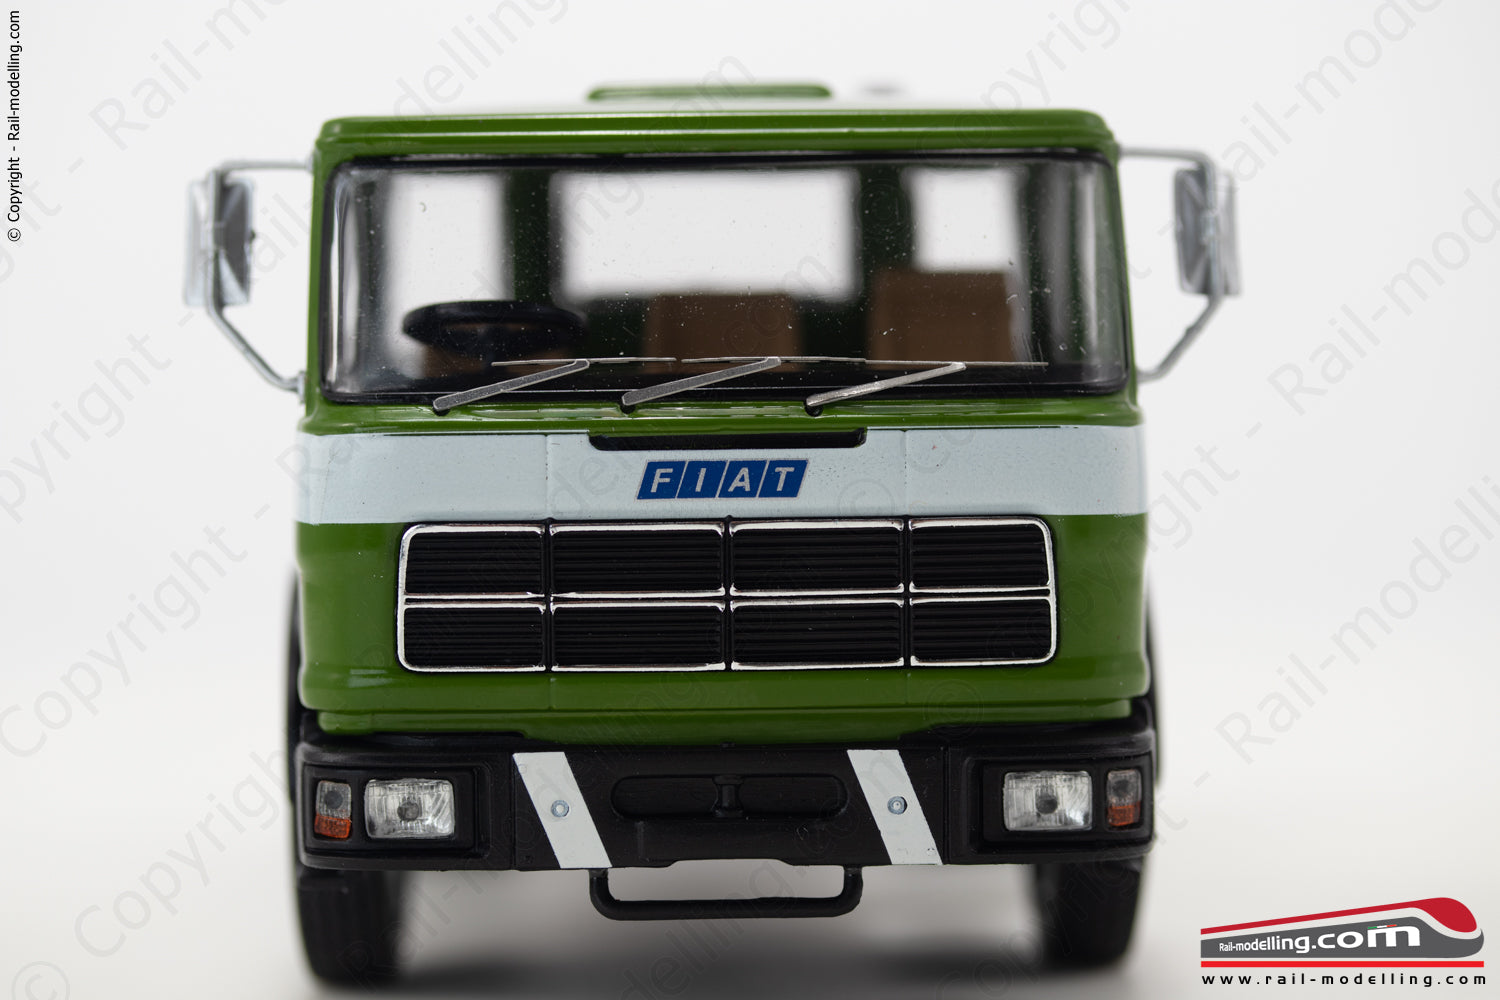 IXO MODEL TR147.22 - 1:43 - FIAT 619 N1 trattore livrea verde con fascia bianca